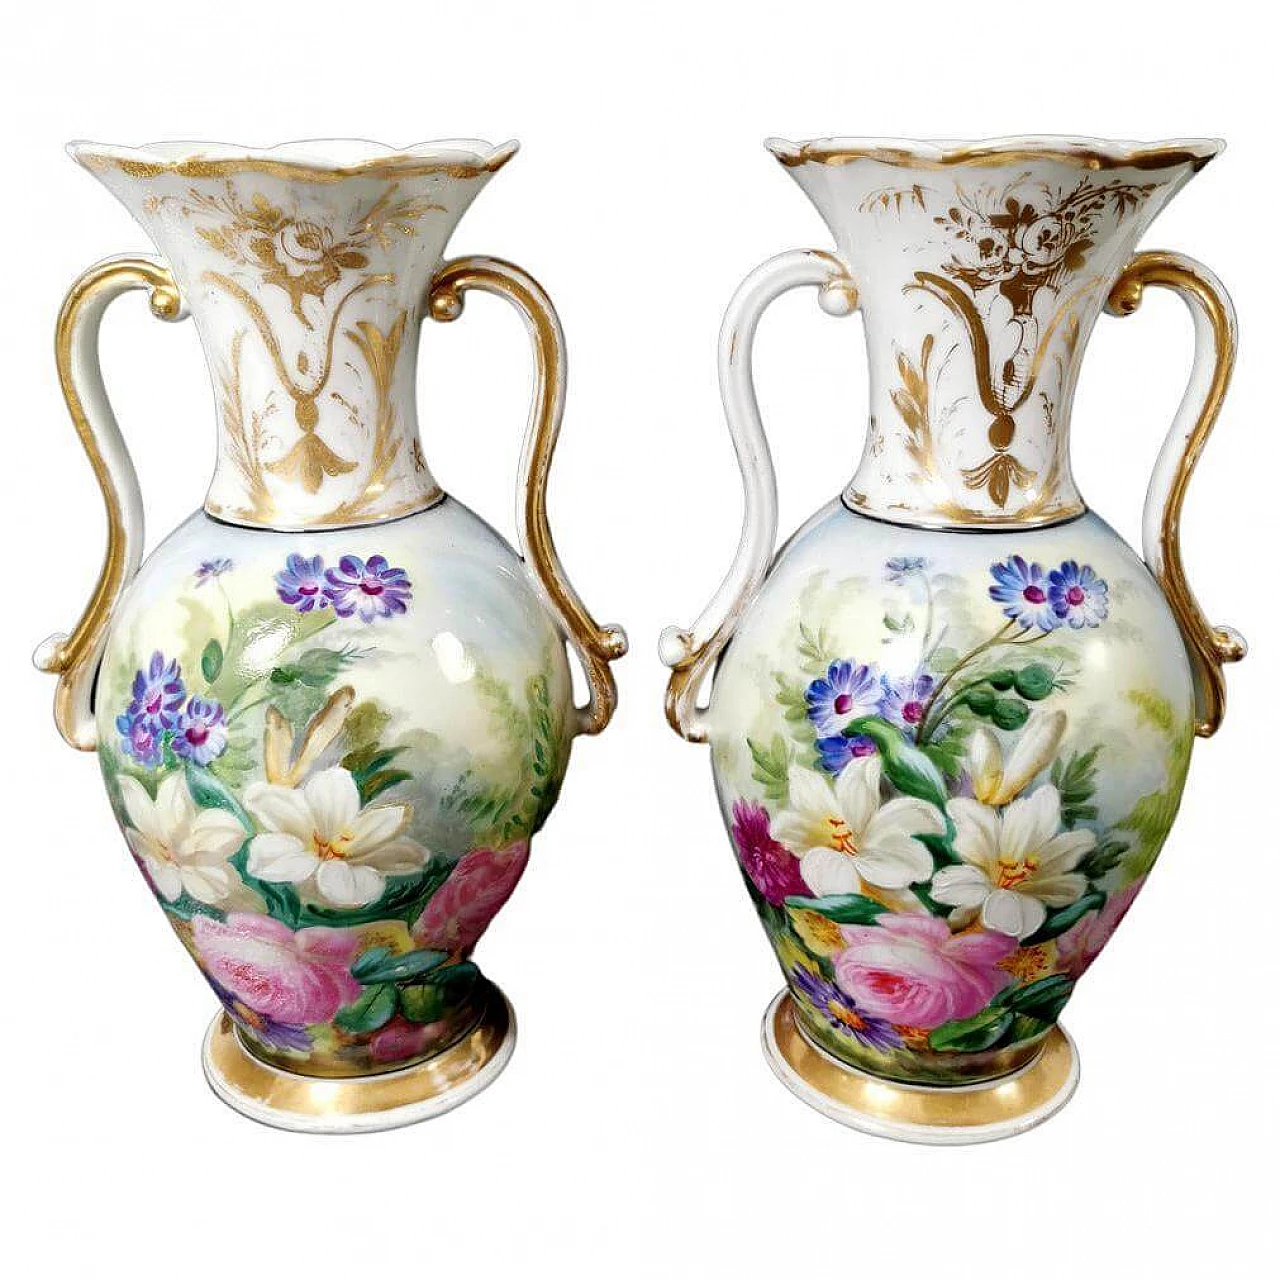 Pair of hand-painted De Paris porcelain vases, 19th century 1463949